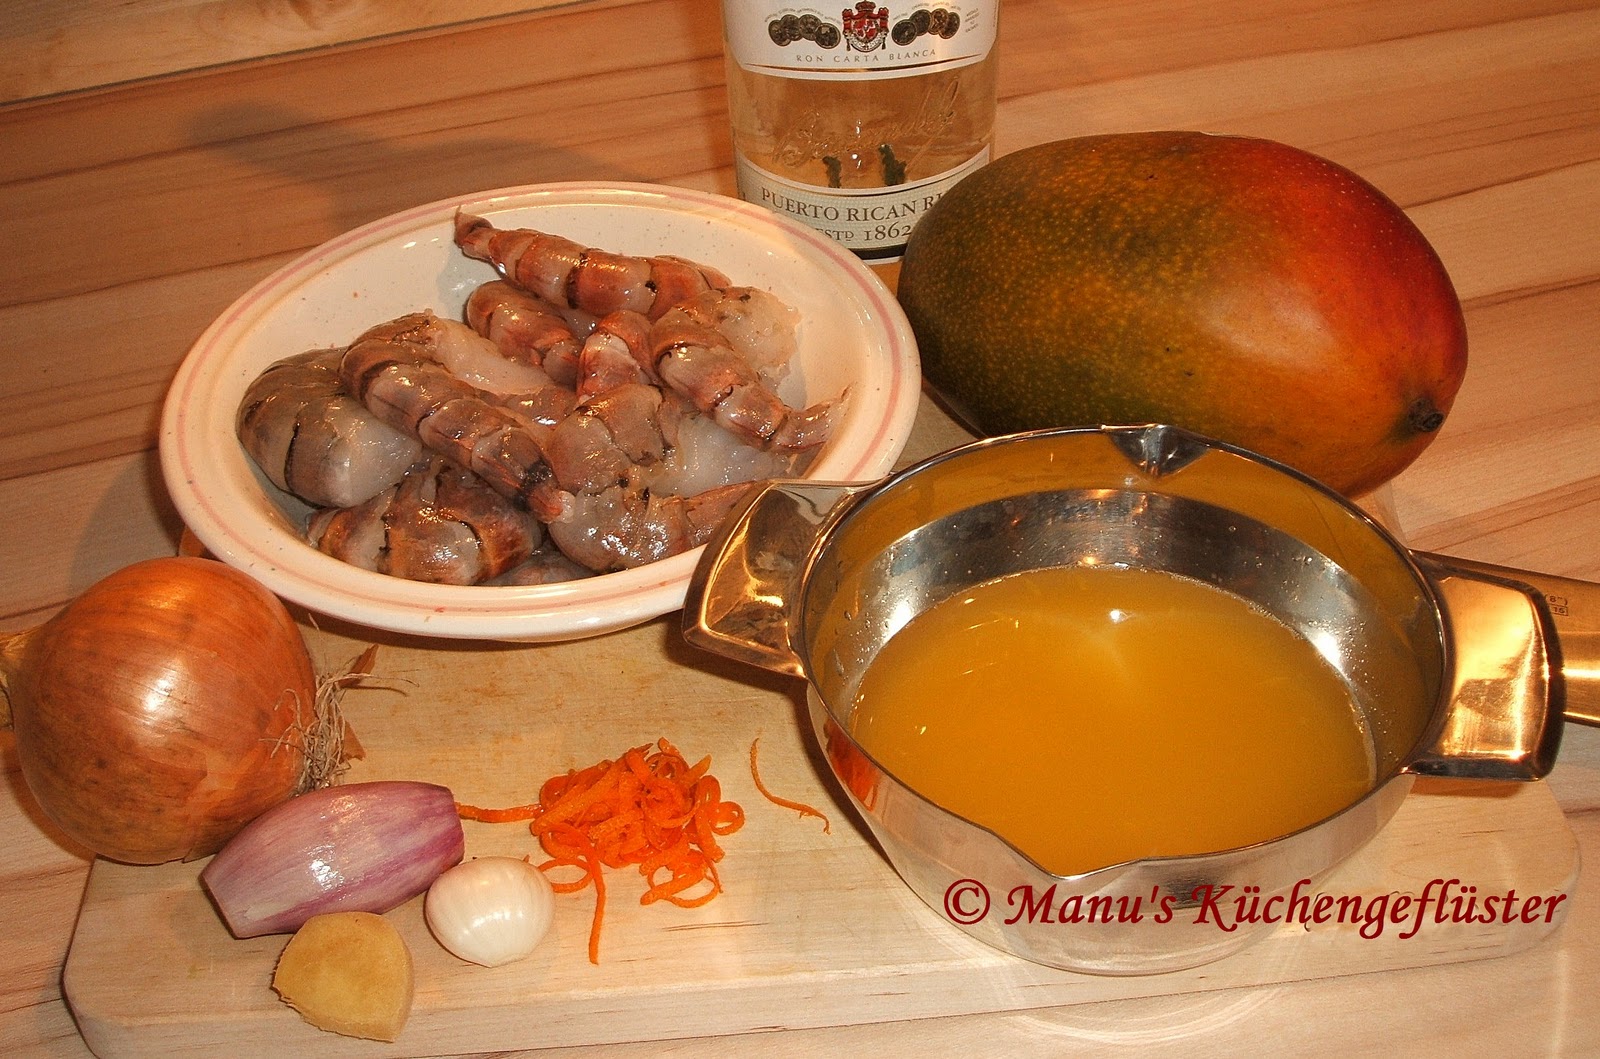 Manus Küchengeflüster: Riesengarnelen am Spieß mit Mangosauce